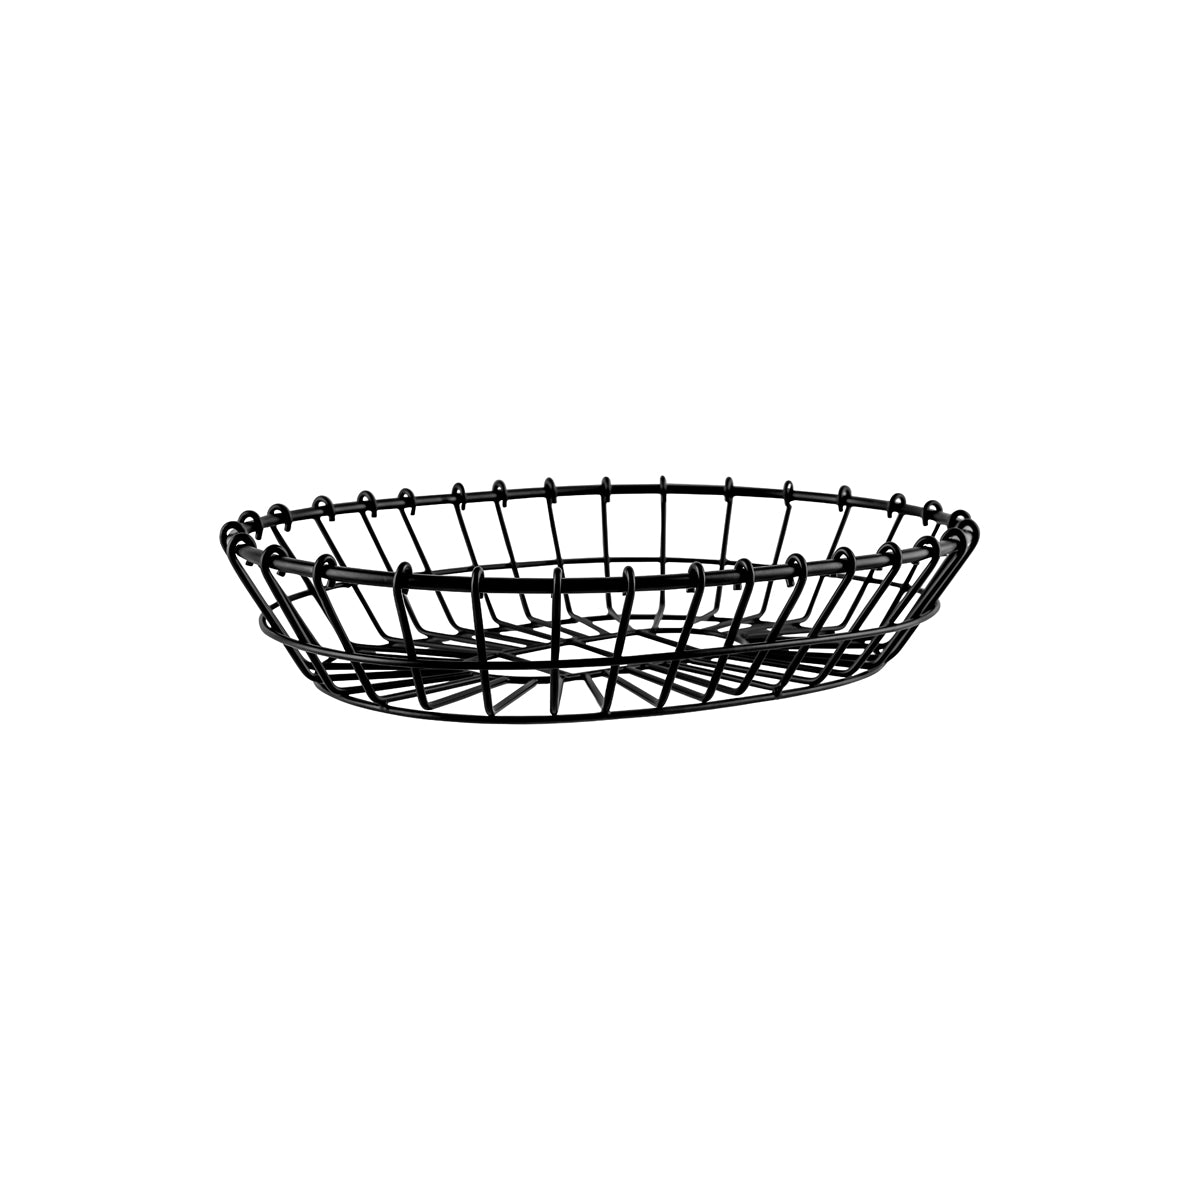 78743 Chef Inox Coney Island Patina Oval Wire Basket Black 280x205x60mm Tomkin Australia Hospitality Supplies